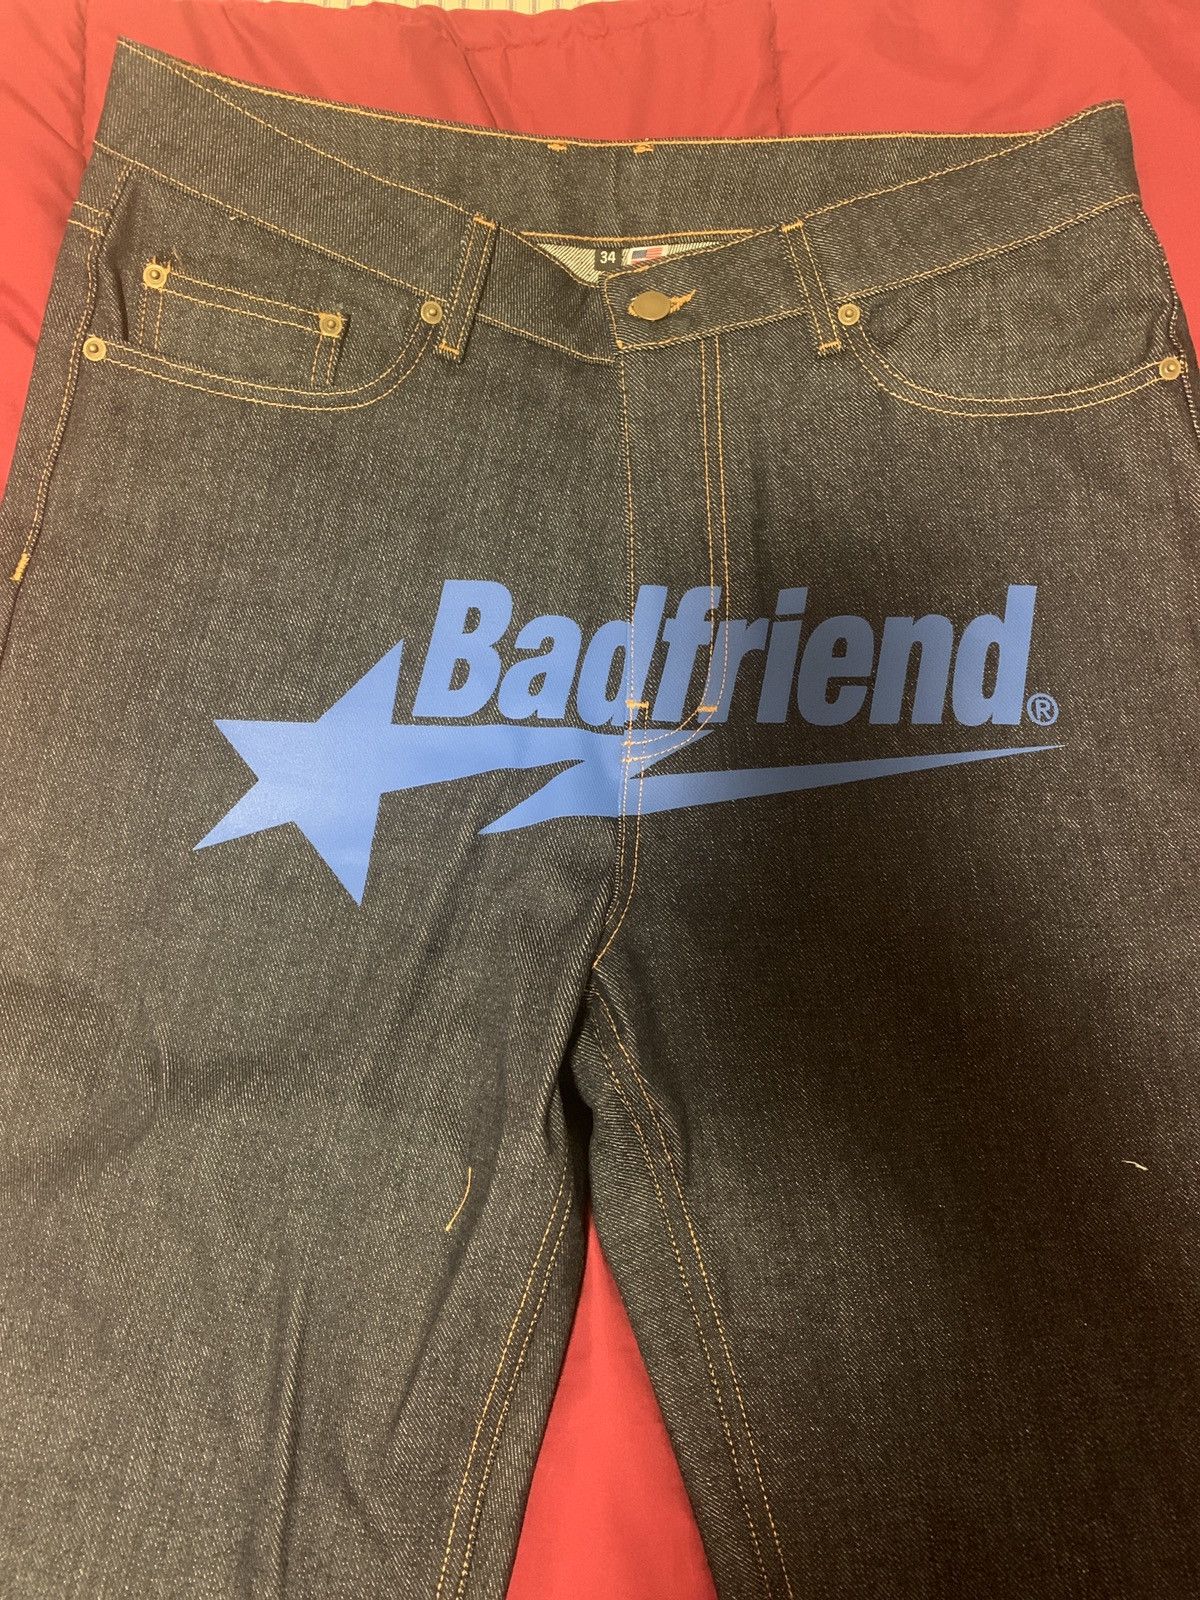 Badfriend Badfriend Star logo Jeans Size US 32 / EU 48 - 3 Preview